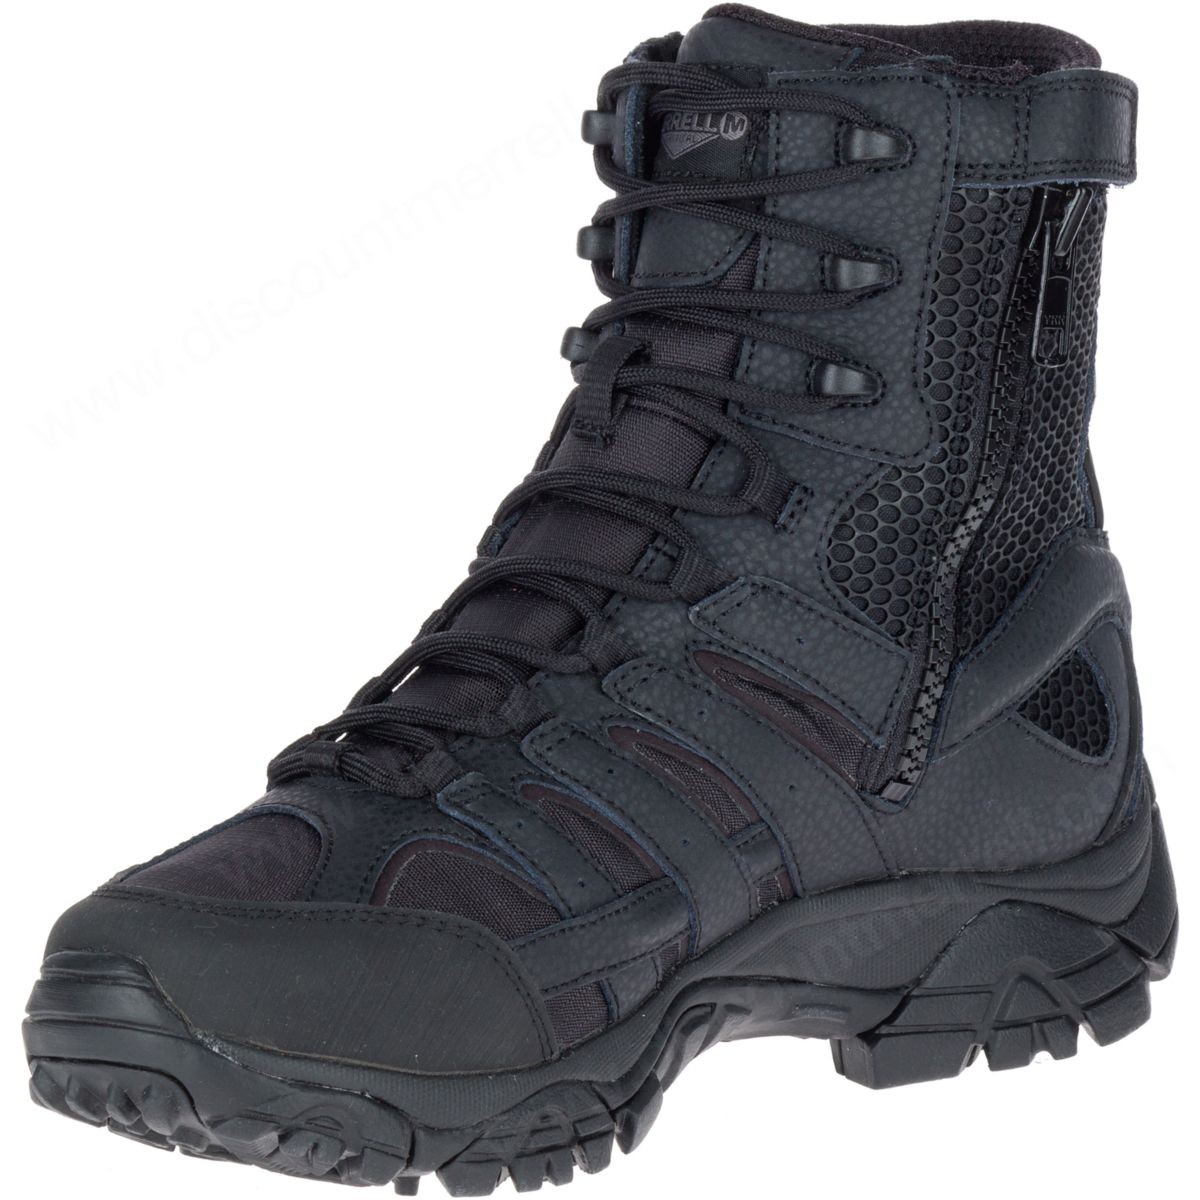 Merrell Men's Moab " Tactical Waterproof Boot Black - -5